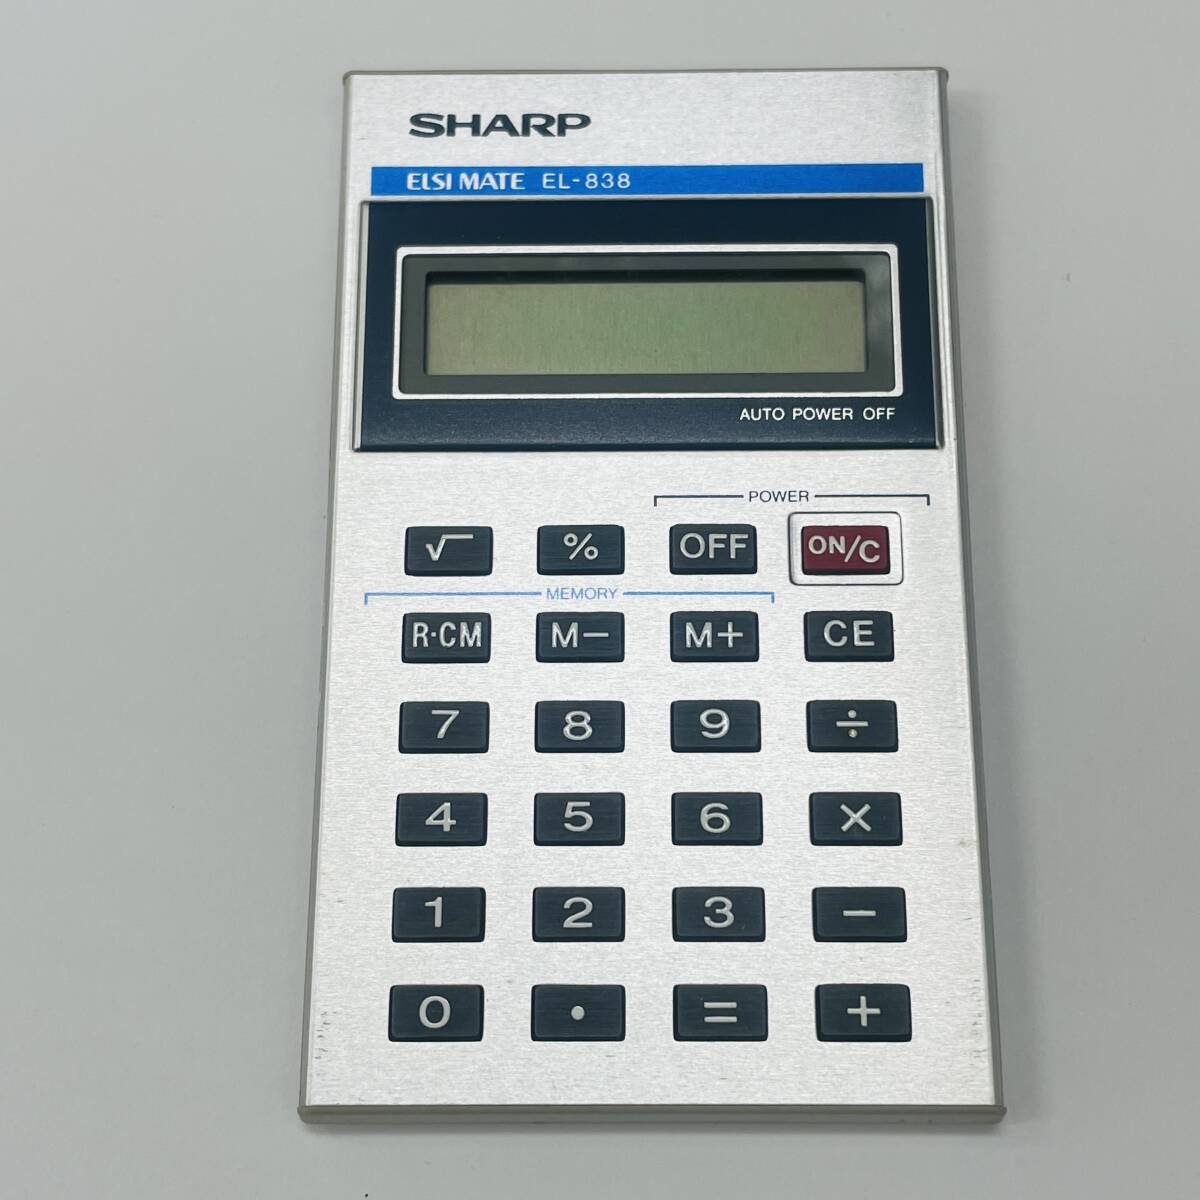 *[SHARP/ sharp ] калькулятор ELSI MATE EL-838 разряженная батарея работоспособность не проверялась товар с чехлом счет машина *